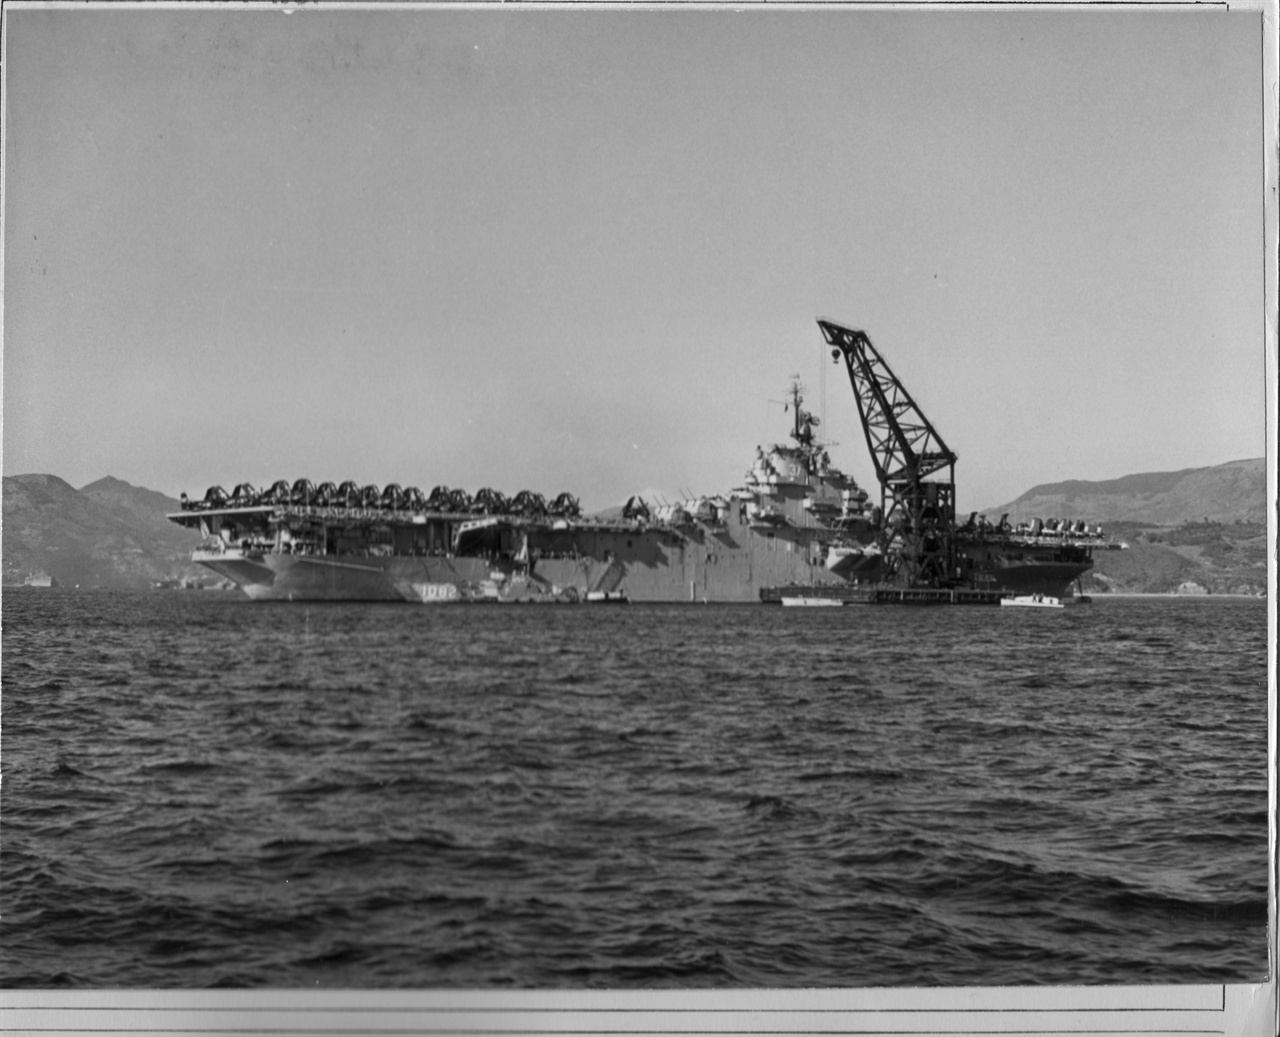 1950. 12. 9. 일본 미 해군기지에서 한국으로 가는 군함에 군수물자를 가득 싣고 있다.